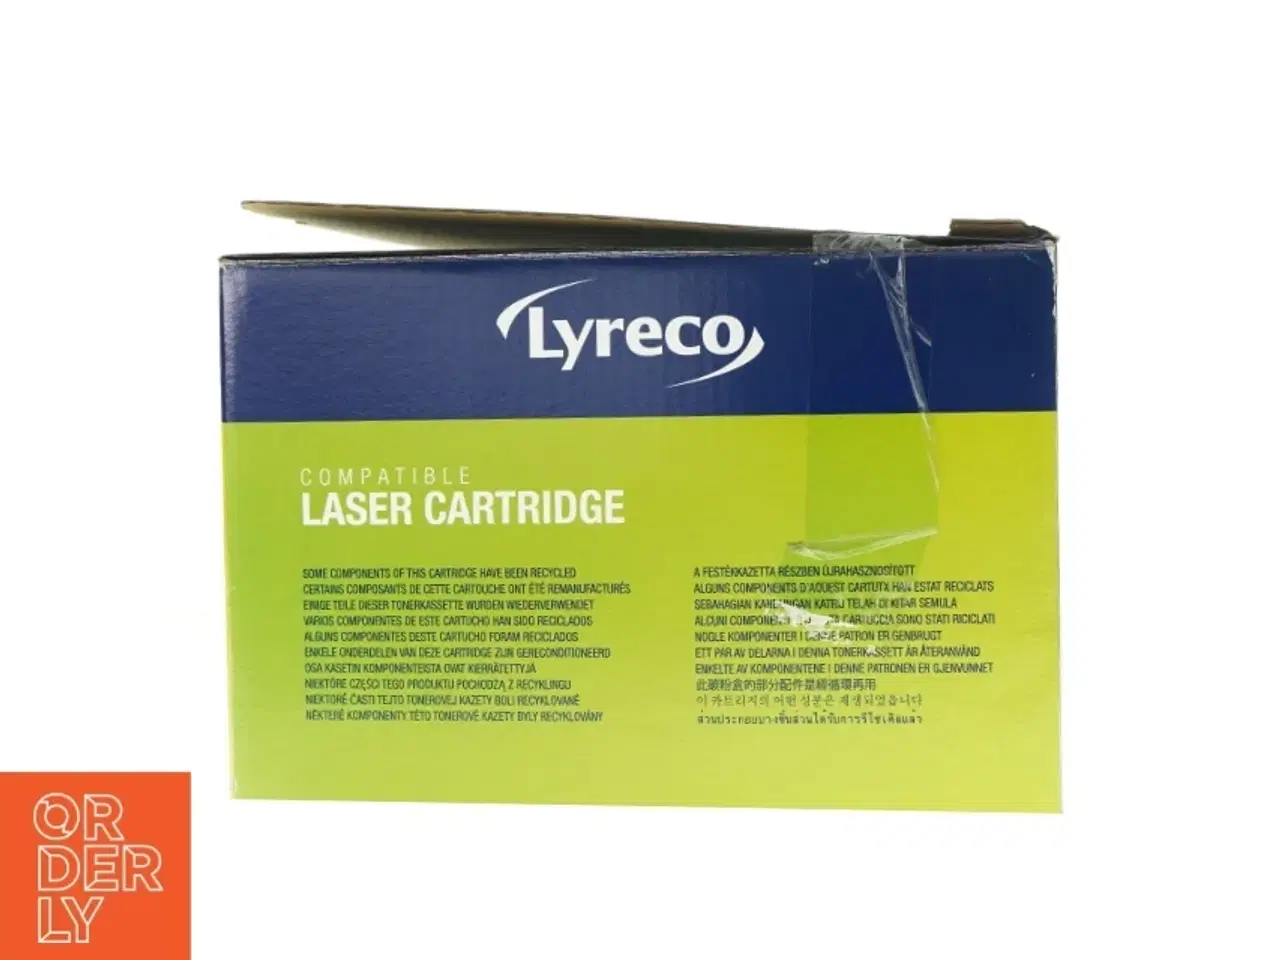 Billede 2 - Laser cartridge patron fra Lyreco